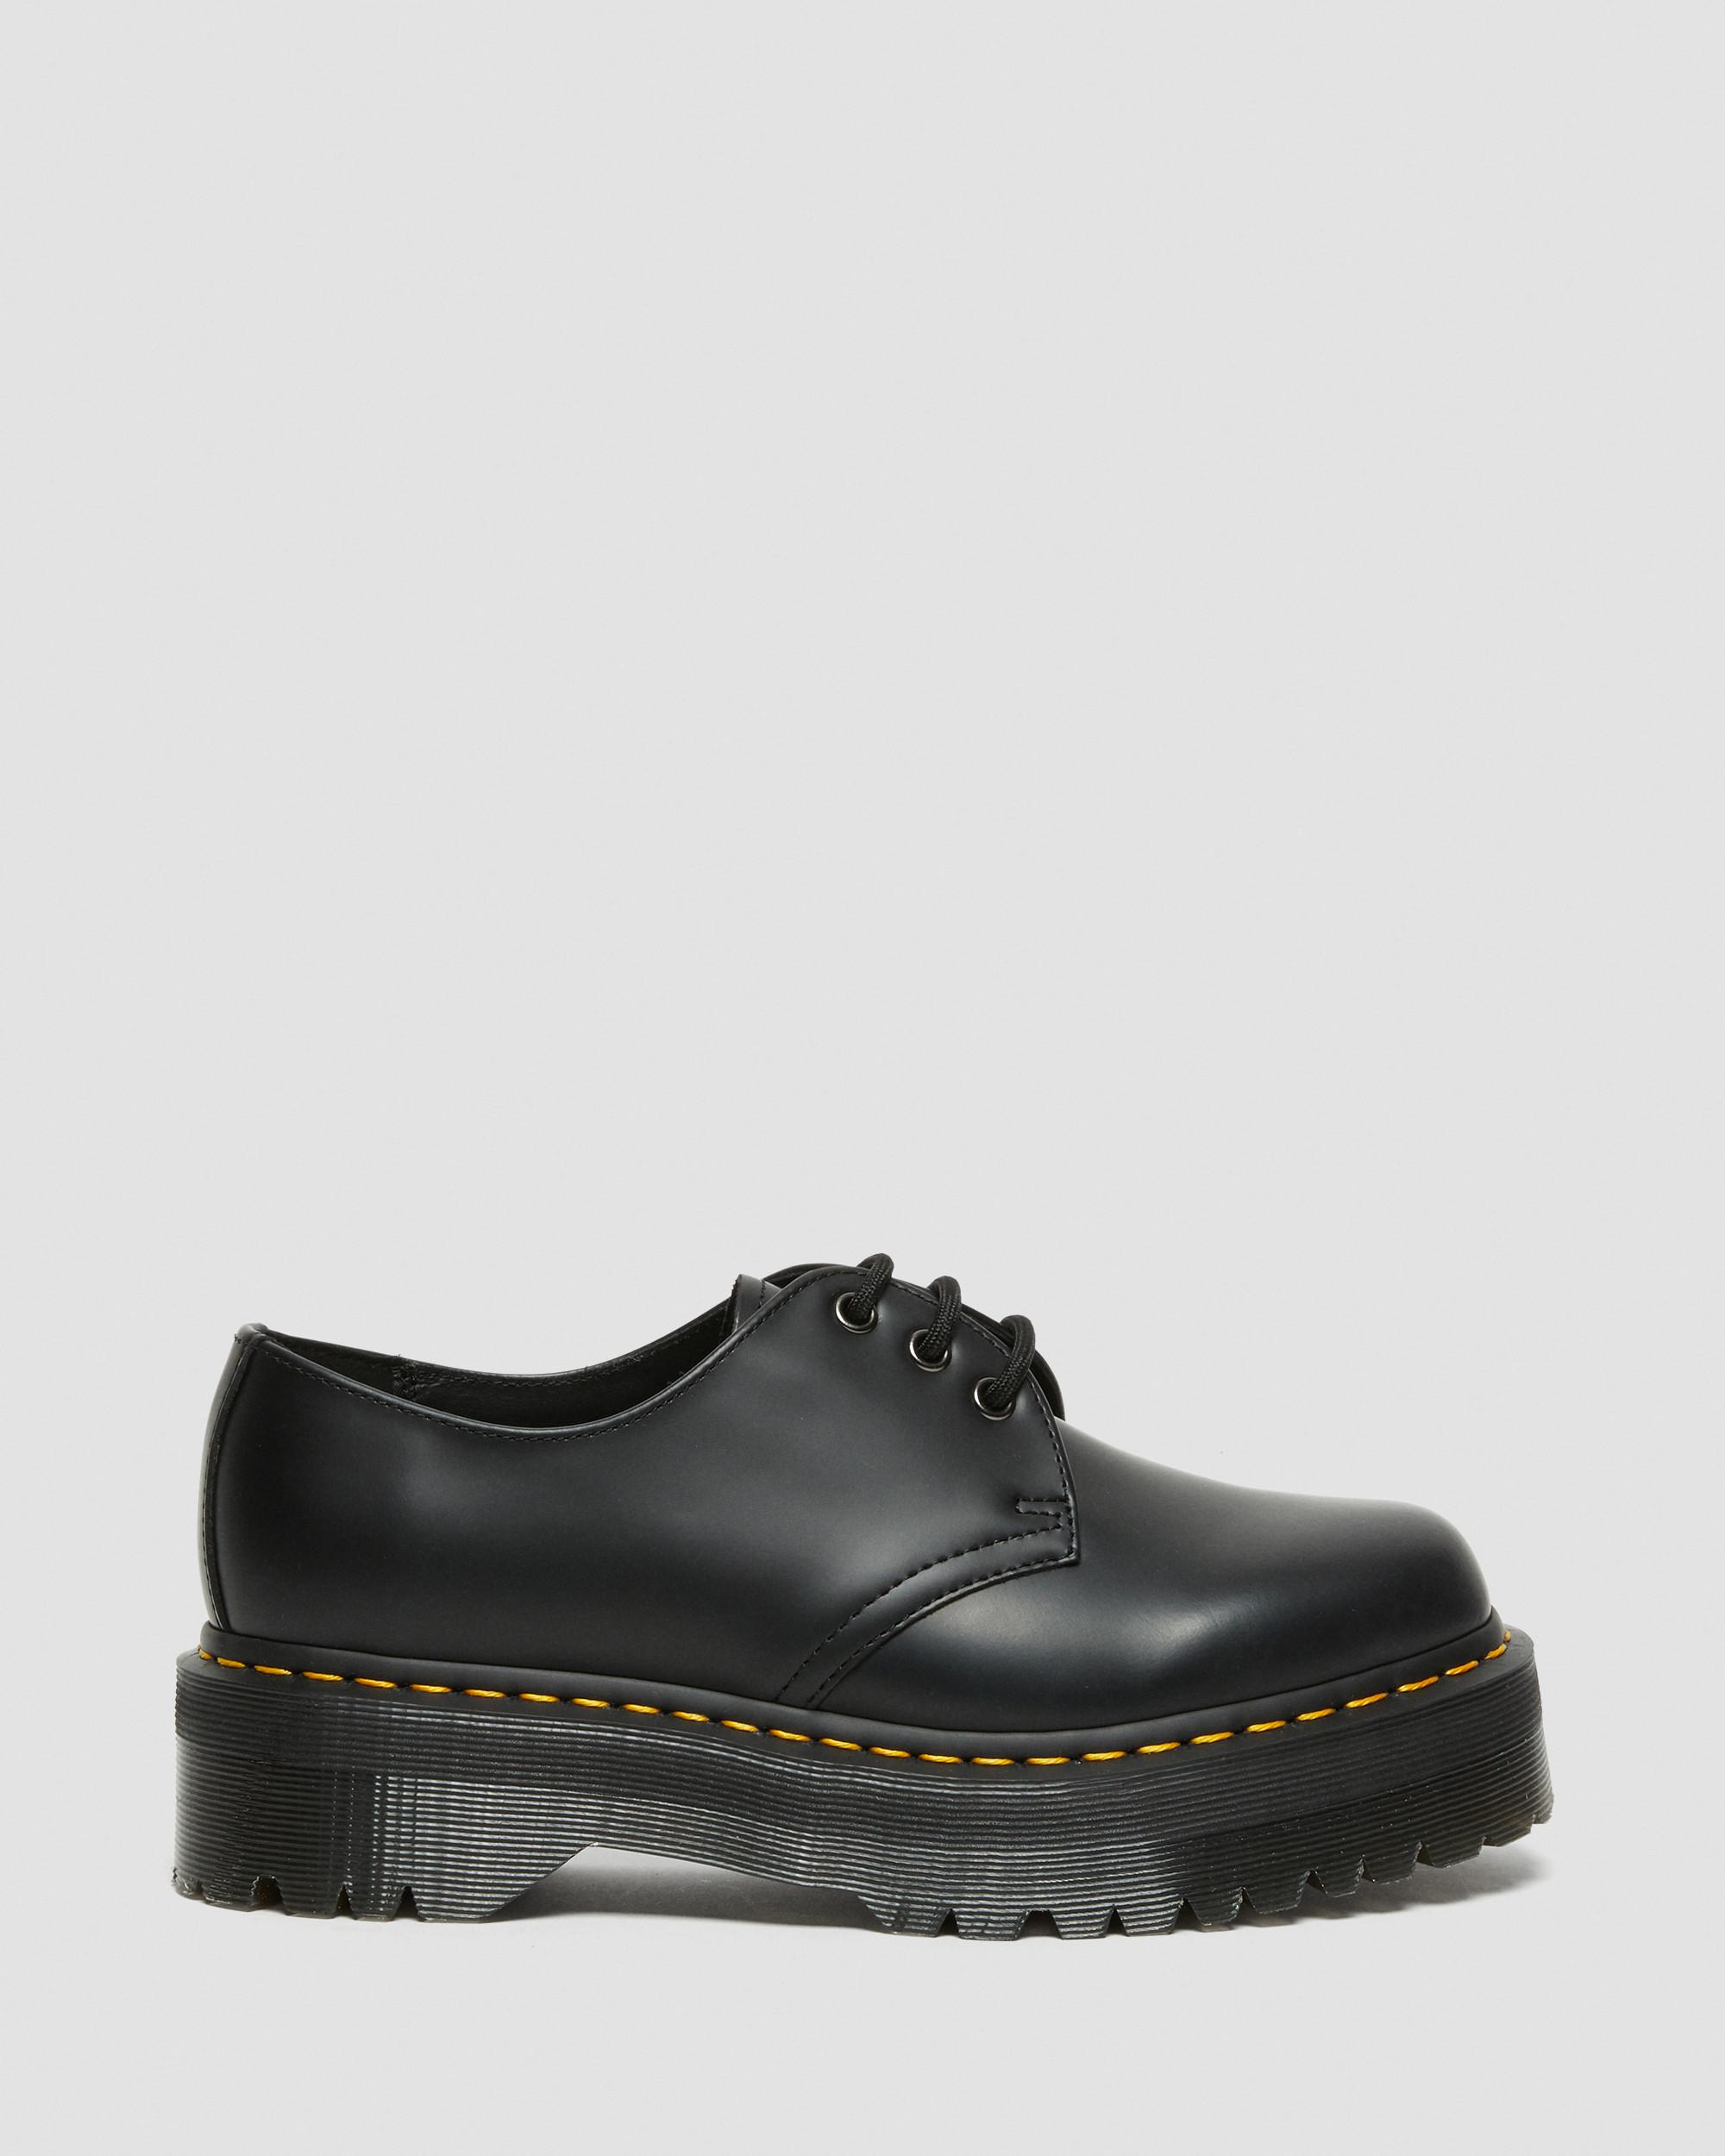 1461 Quad Smooth Leather Platform Shoes in Black | Dr. Martens